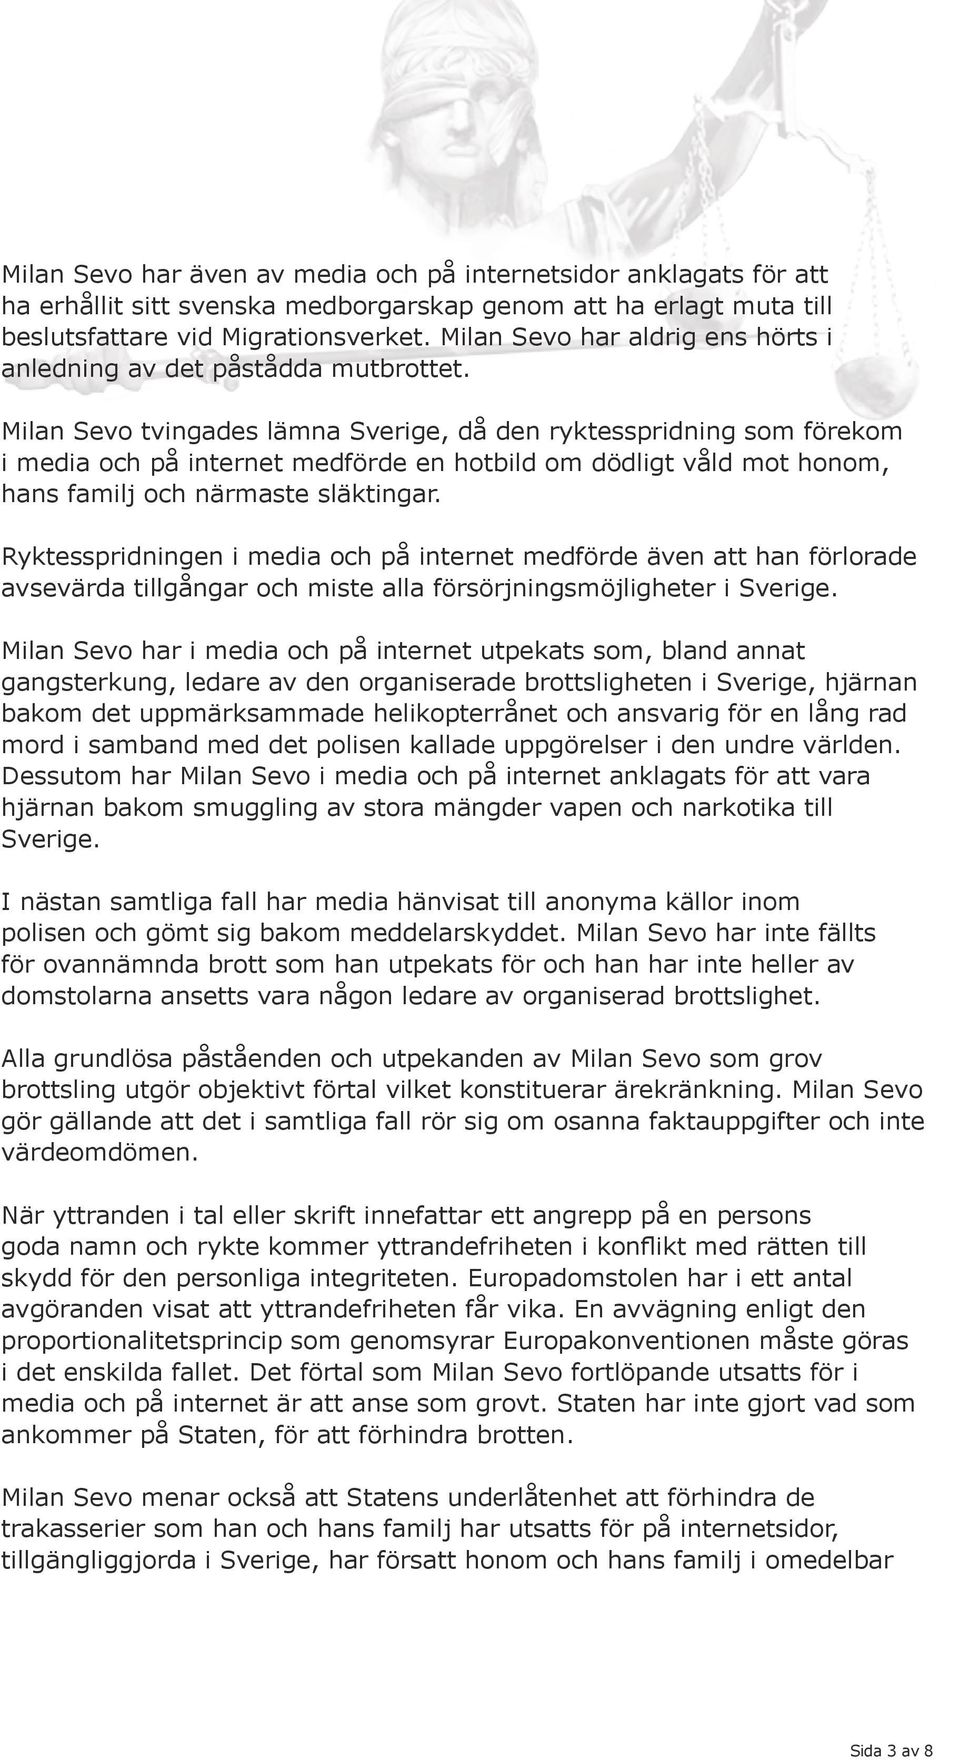 Milan Sevo tvingades lämna Sverige, då den ryktesspridning som förekom i media och på internet medförde en hotbild om dödligt våld mot honom, hans familj och närmaste släktingar.